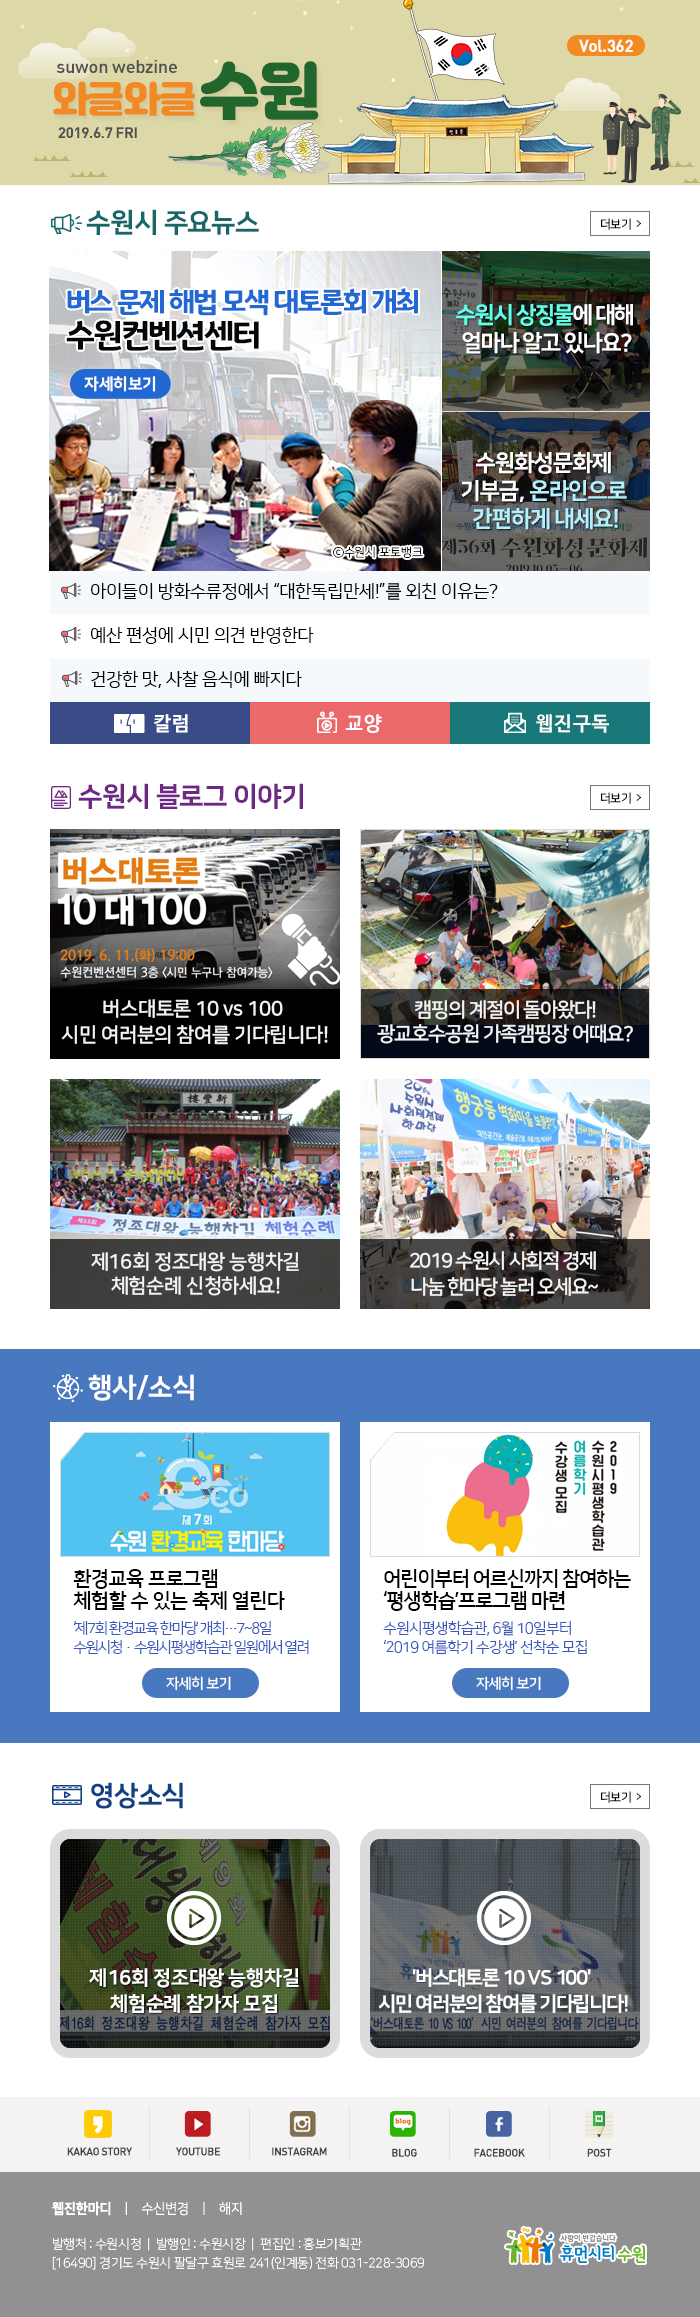 버스 문제 대헙 모색 대토론회 개최 수원컨벤션센터